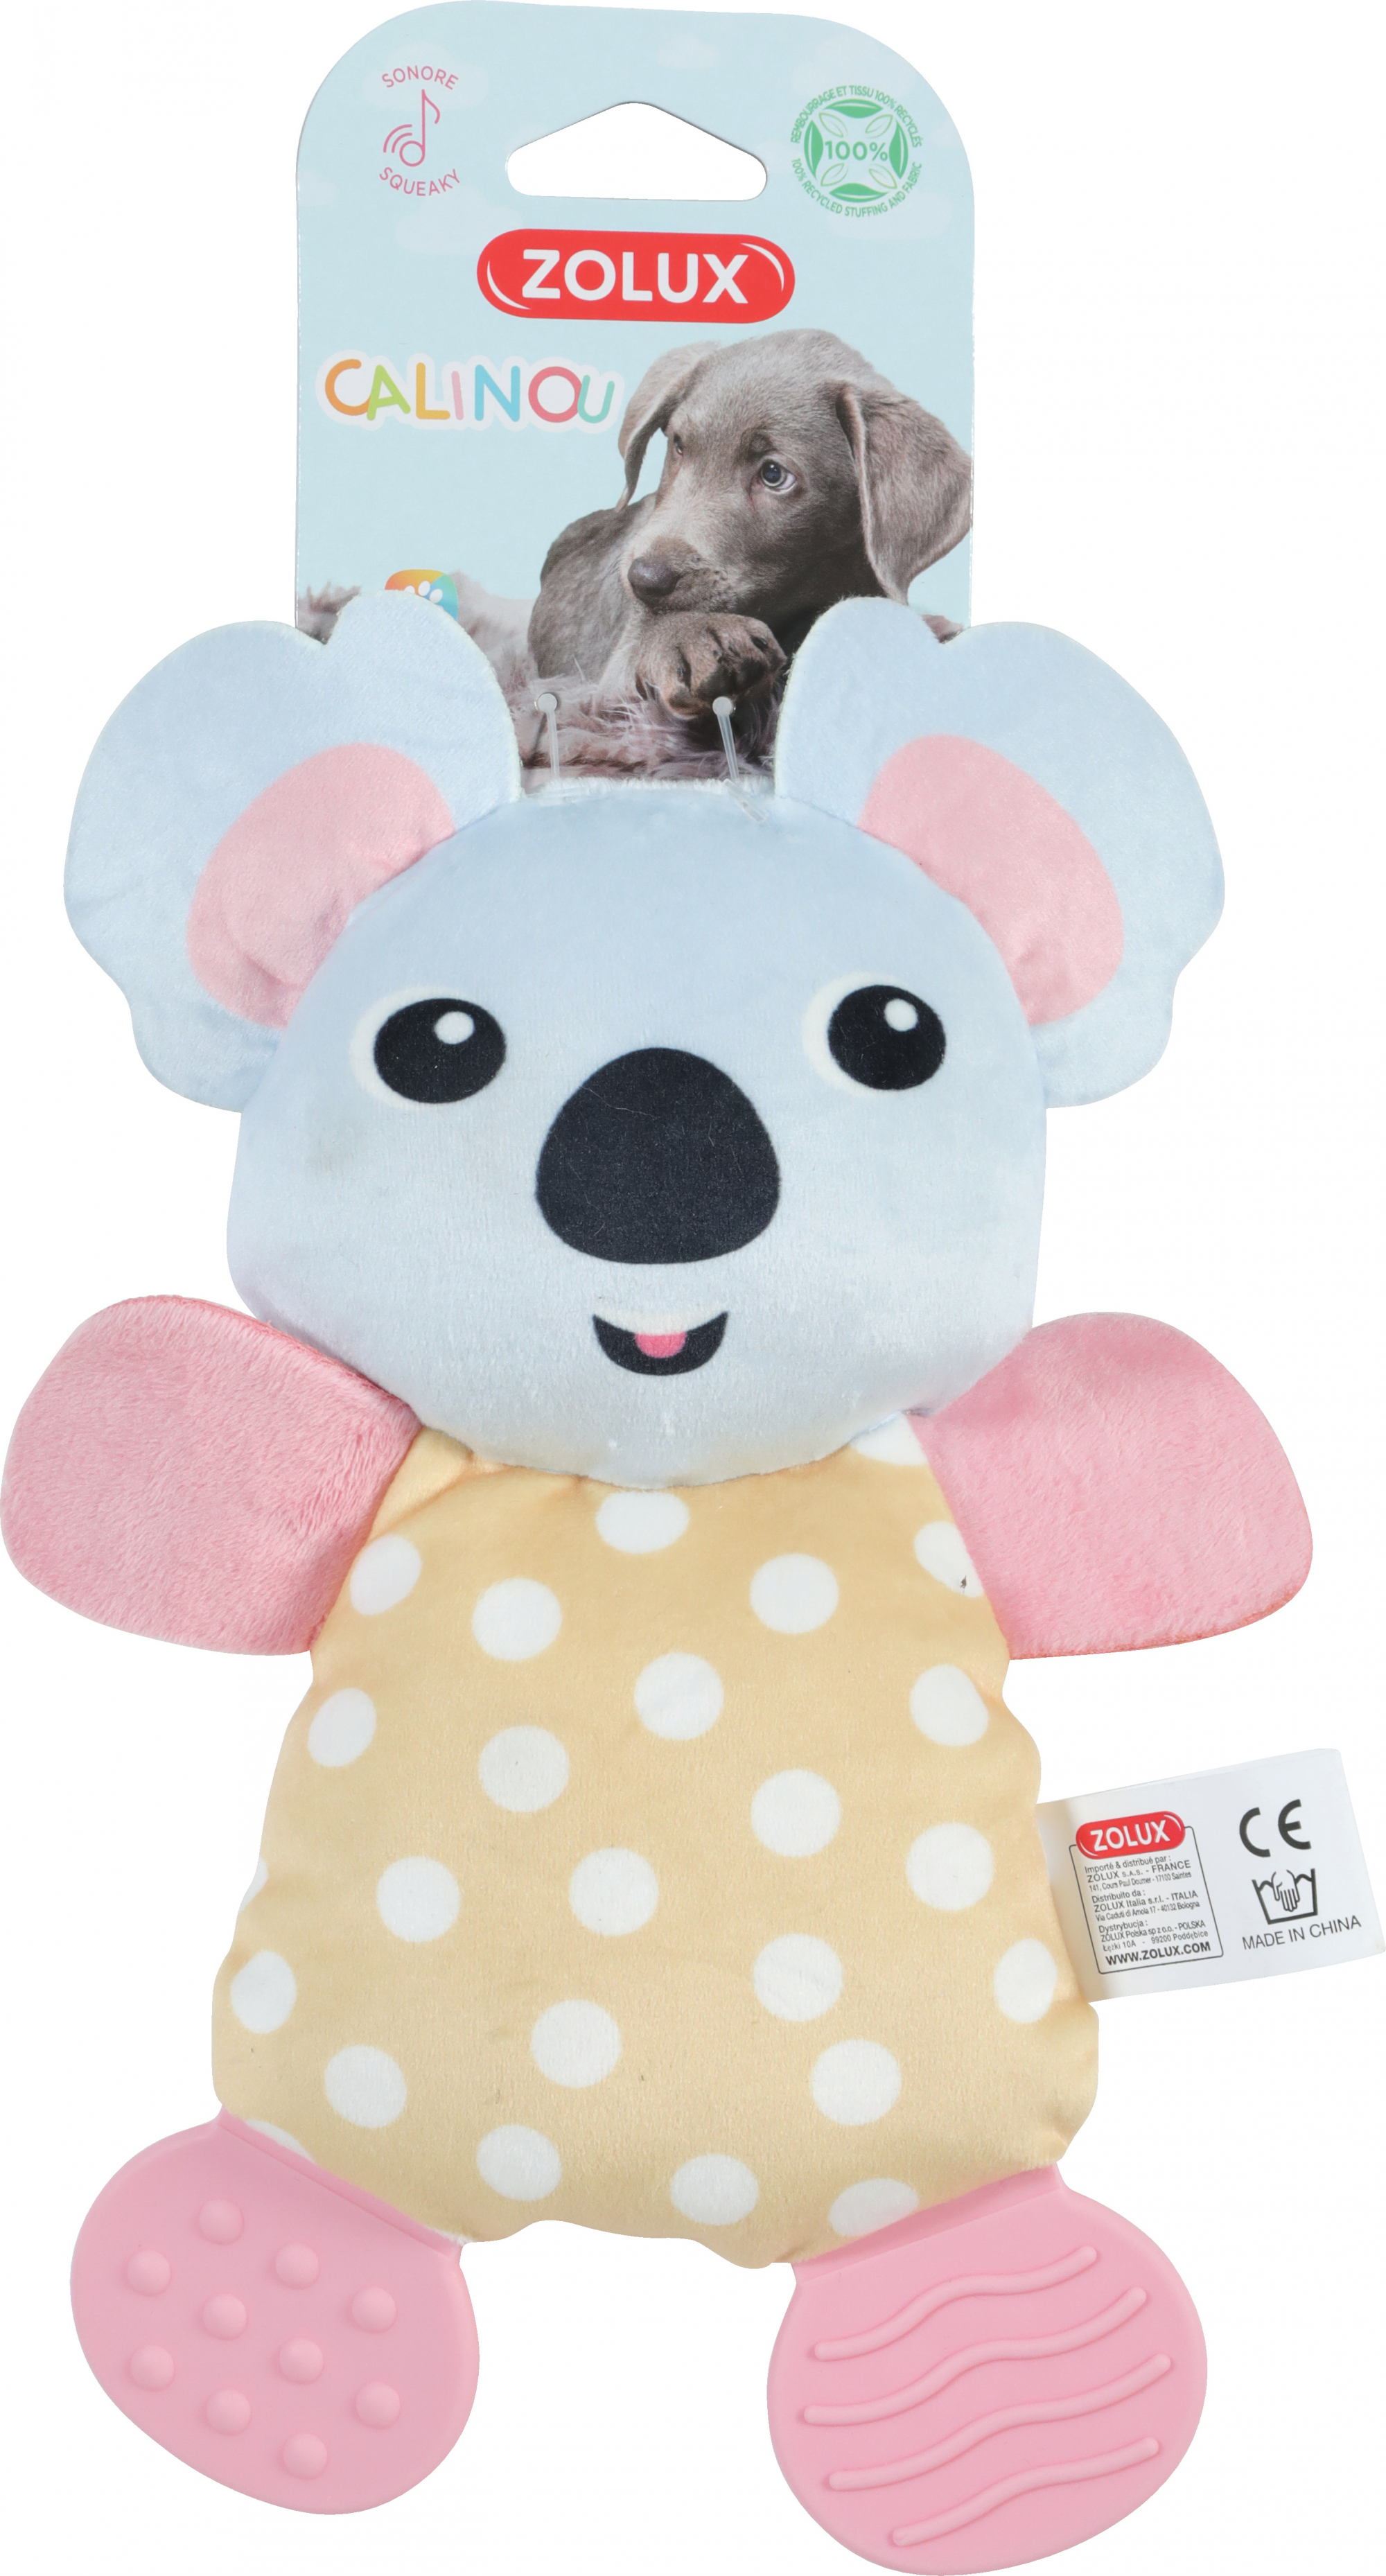 Knuffelspeelgoed met geluid voor puppy Calinou koala dental